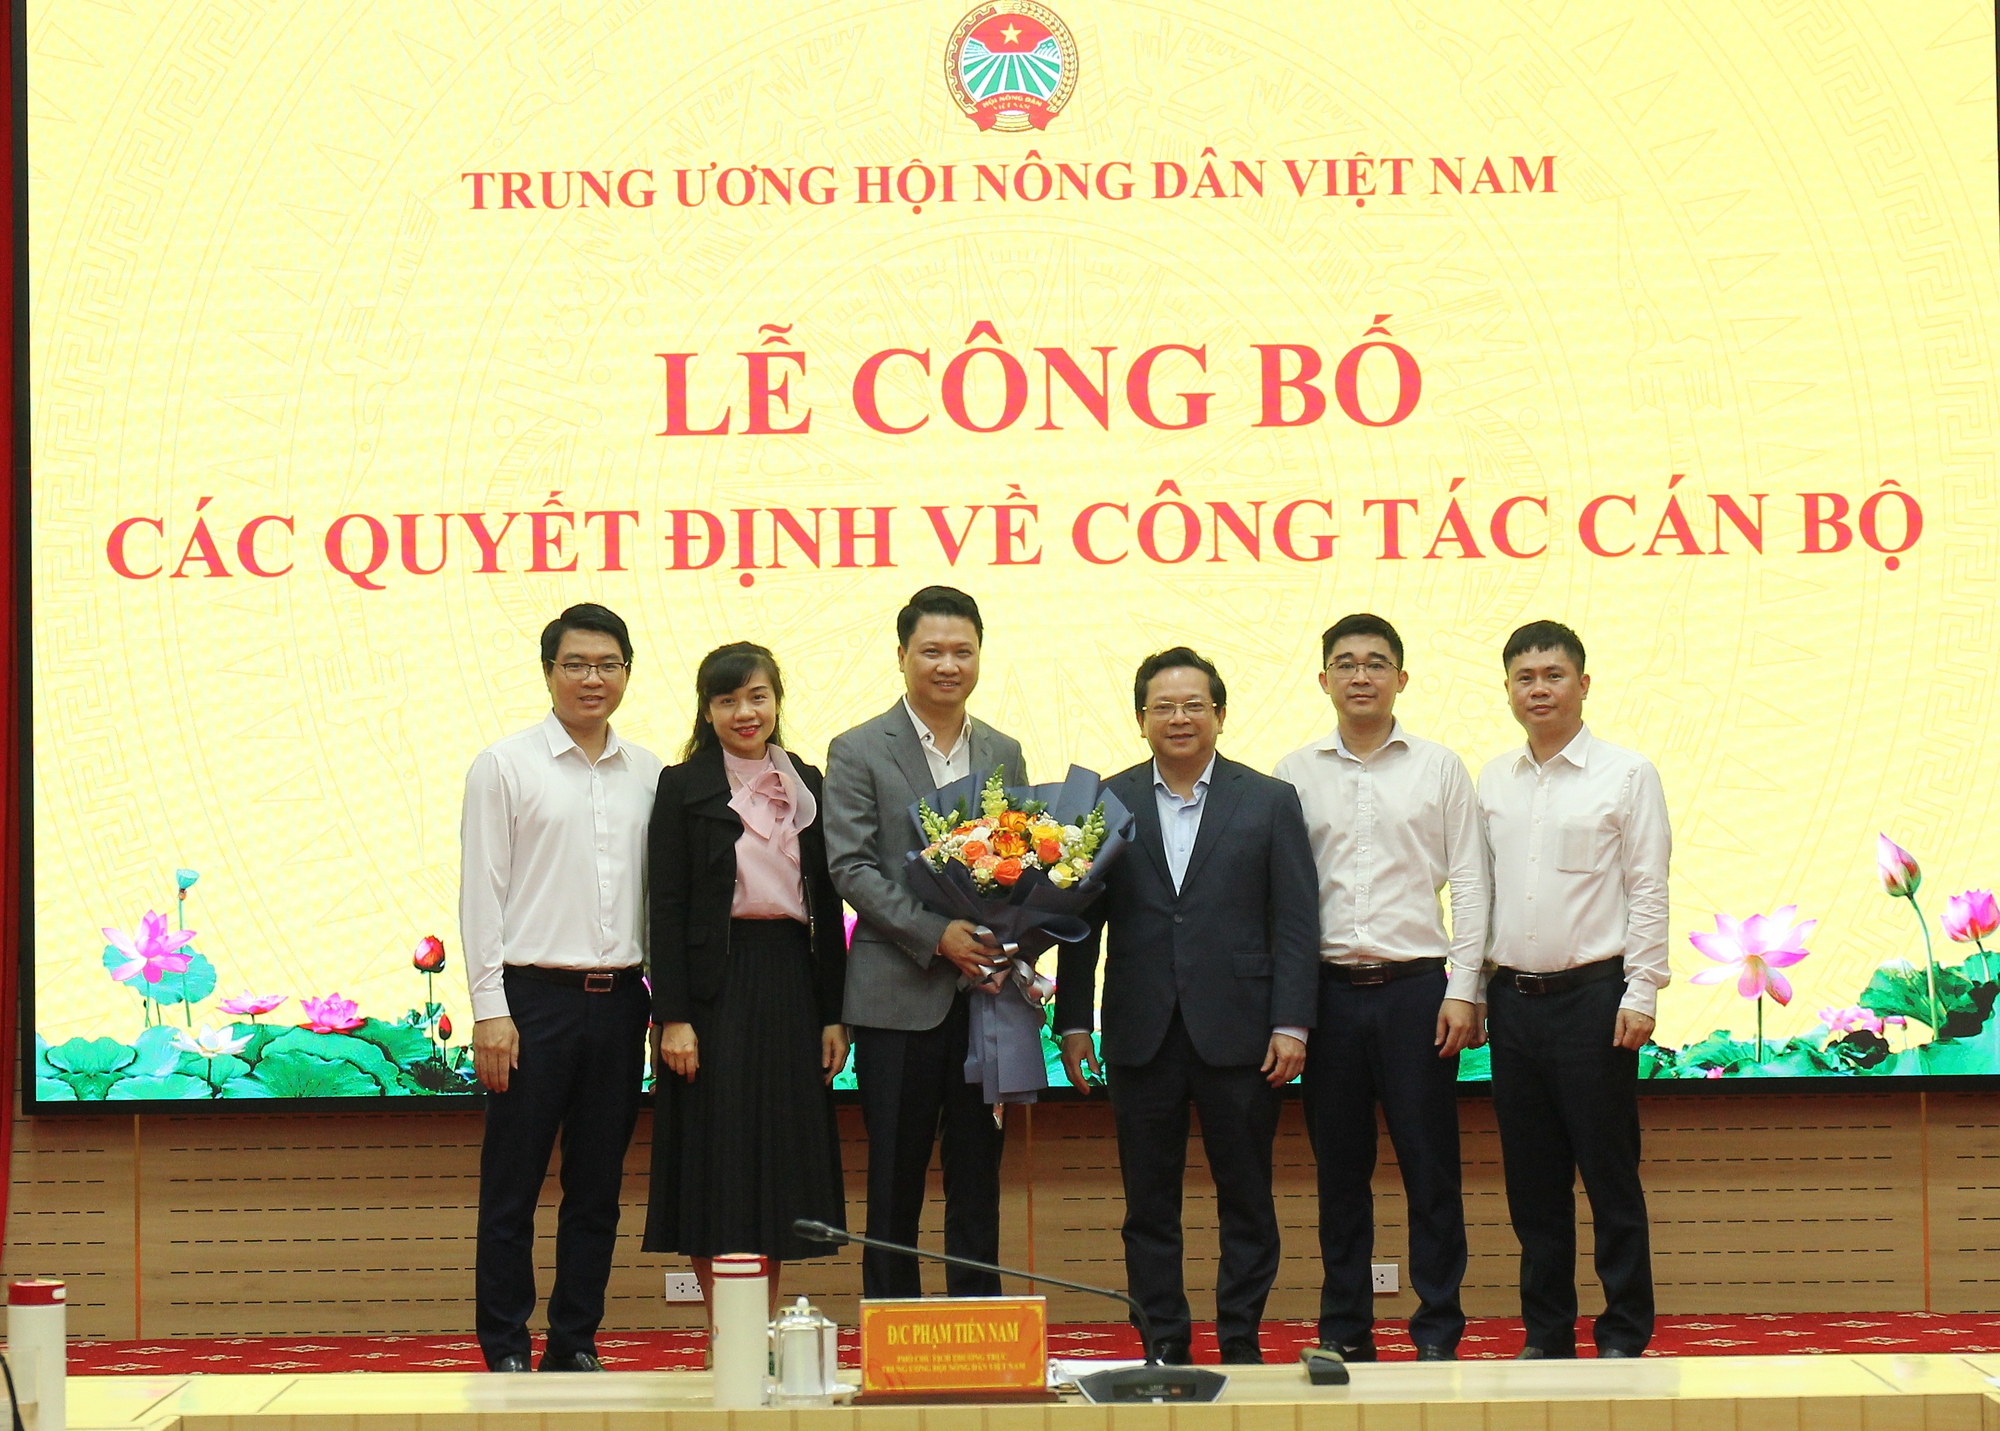 Tiếp nhận và bổ nhiệm ông Trần Sĩ Nghị làm Thư ký Chủ tịch BCH Trung ương Hội Nông dân Việt Nam  - Ảnh 2.